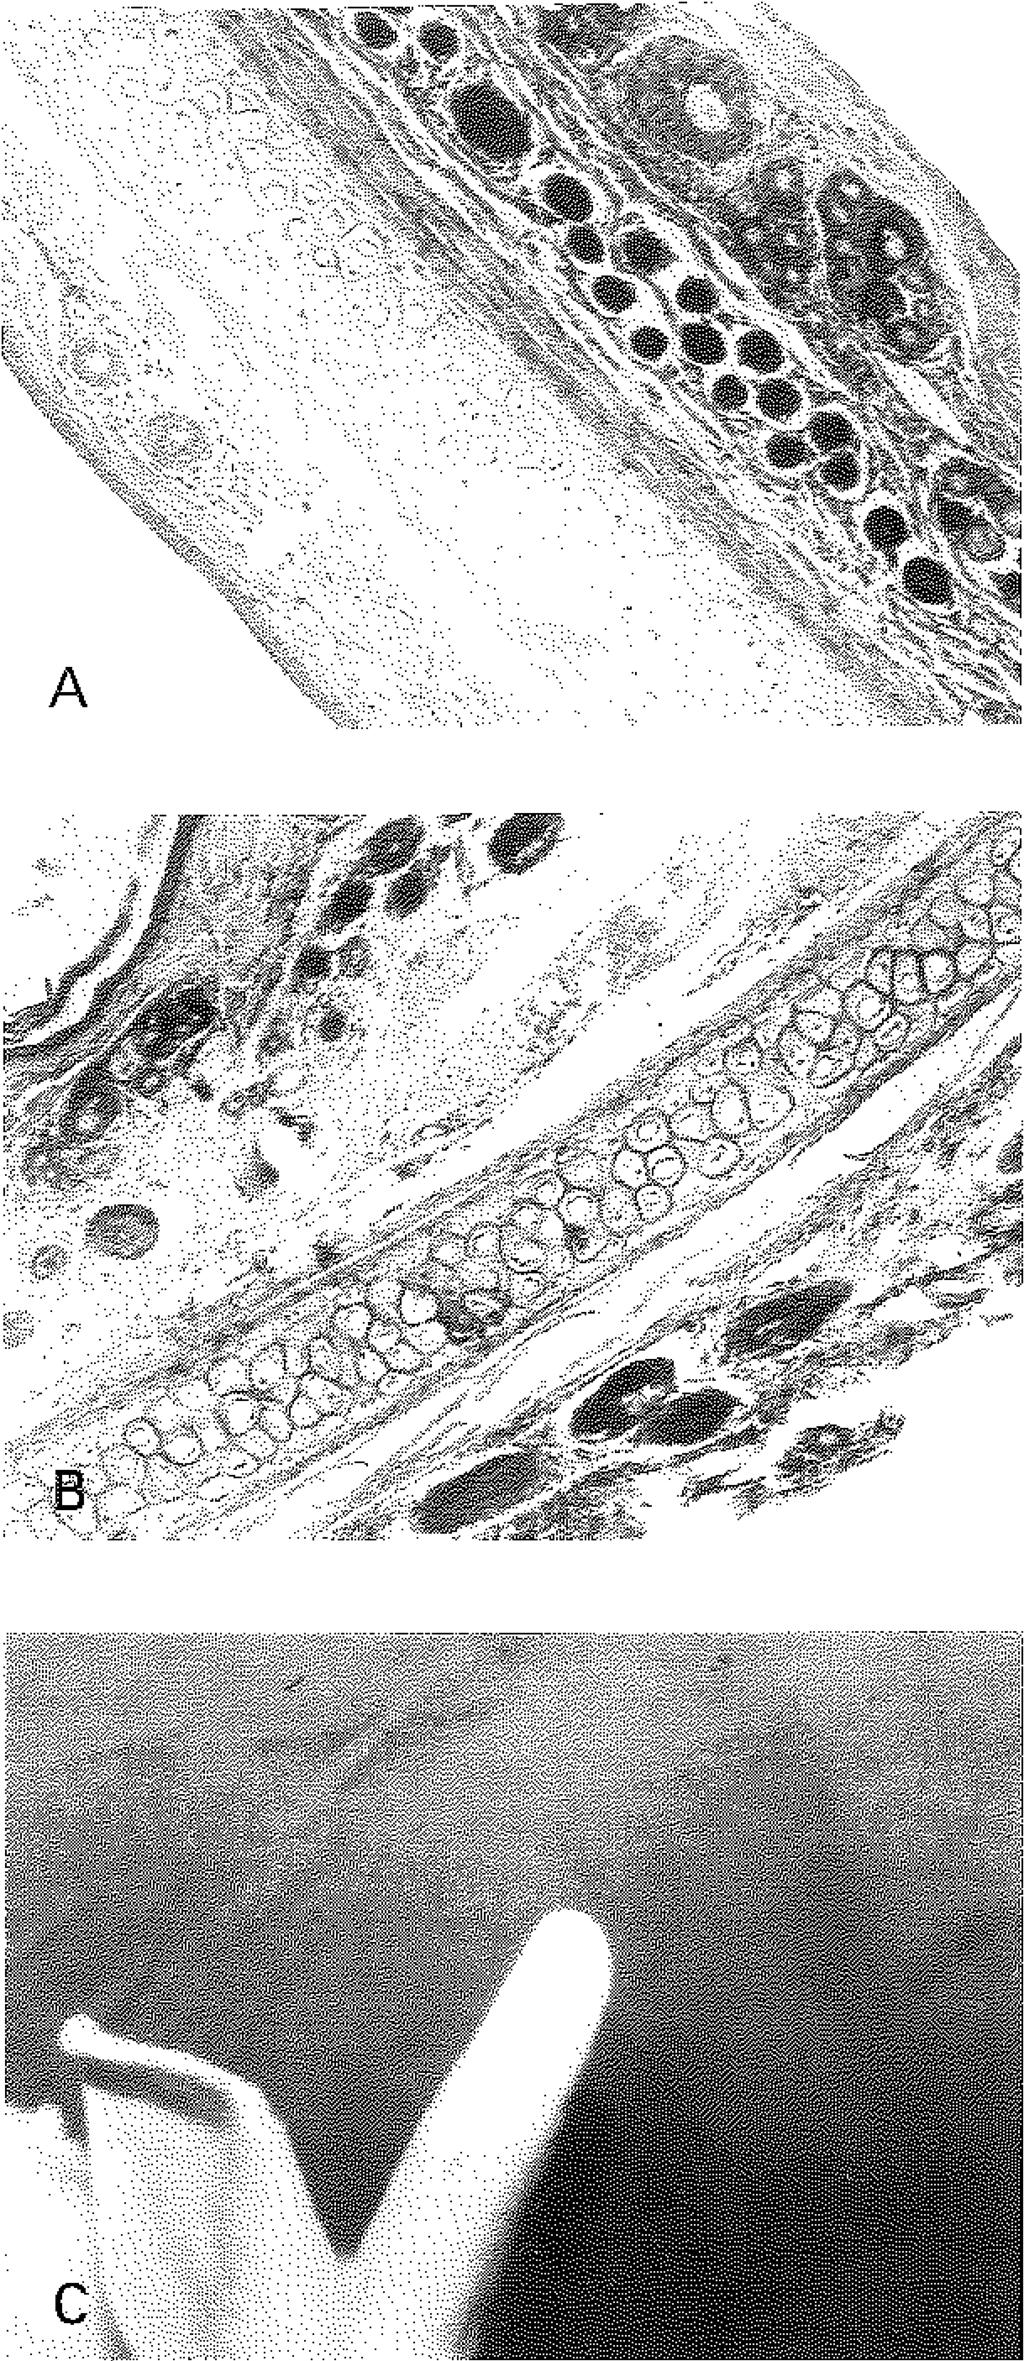 12 mm lik artış, hücre sayısında karşı kulağa göre 52 Şekil 3A: 1B grubu kıvrık kulak histolojik görünümü (H&ExlO) kartilajda, dış yüzey perikondriumda (sağda) kalınlaşma görülmektedir.